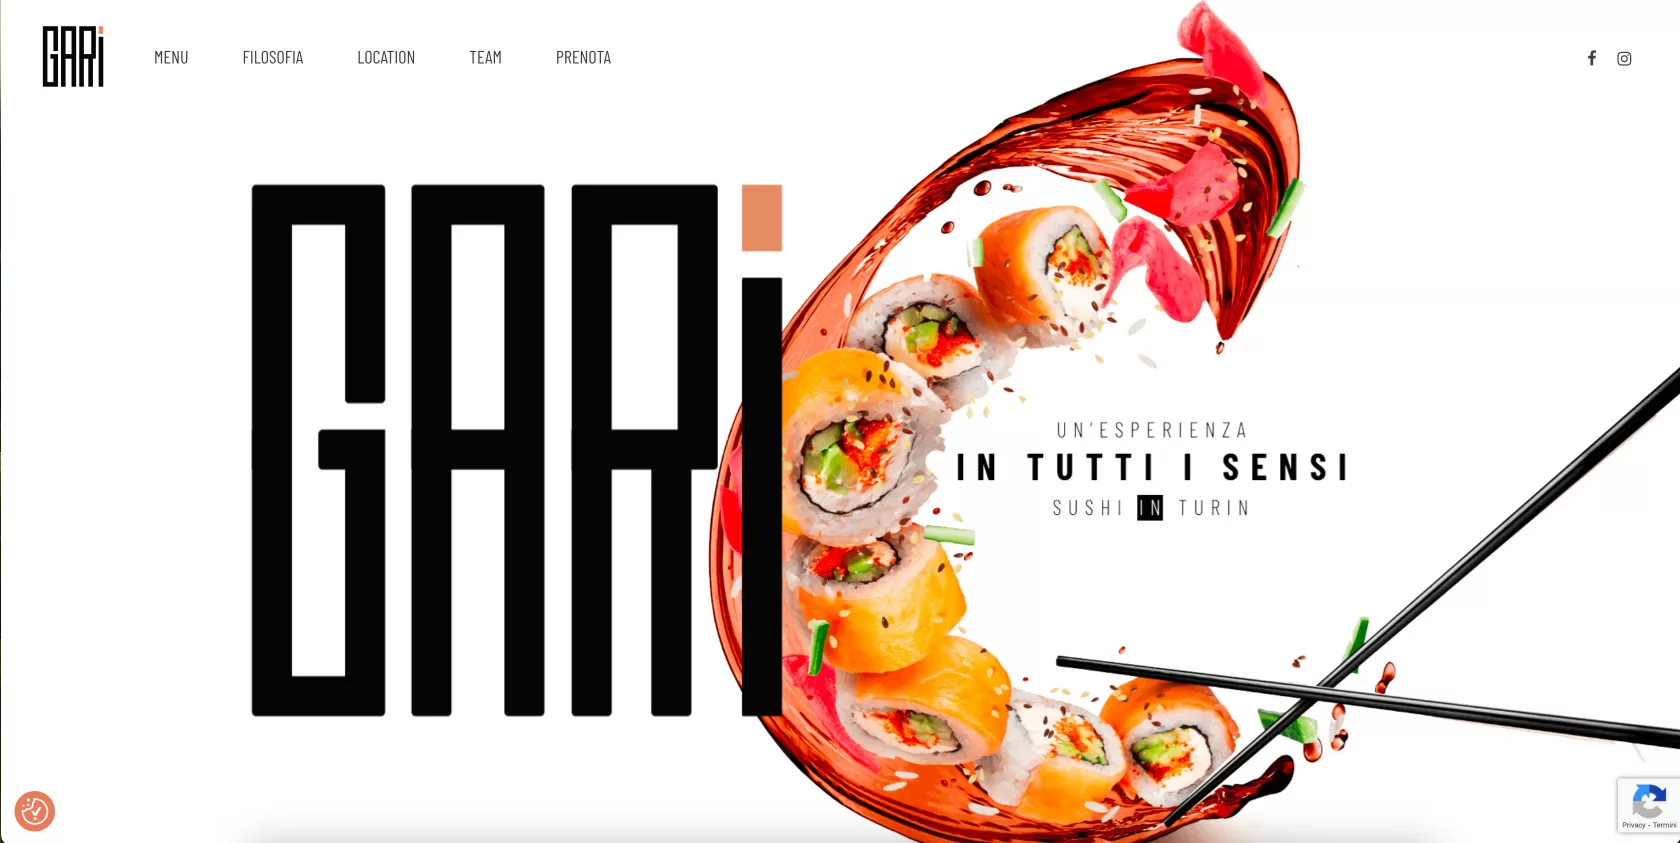 Gari Sushi in Turin Onepage